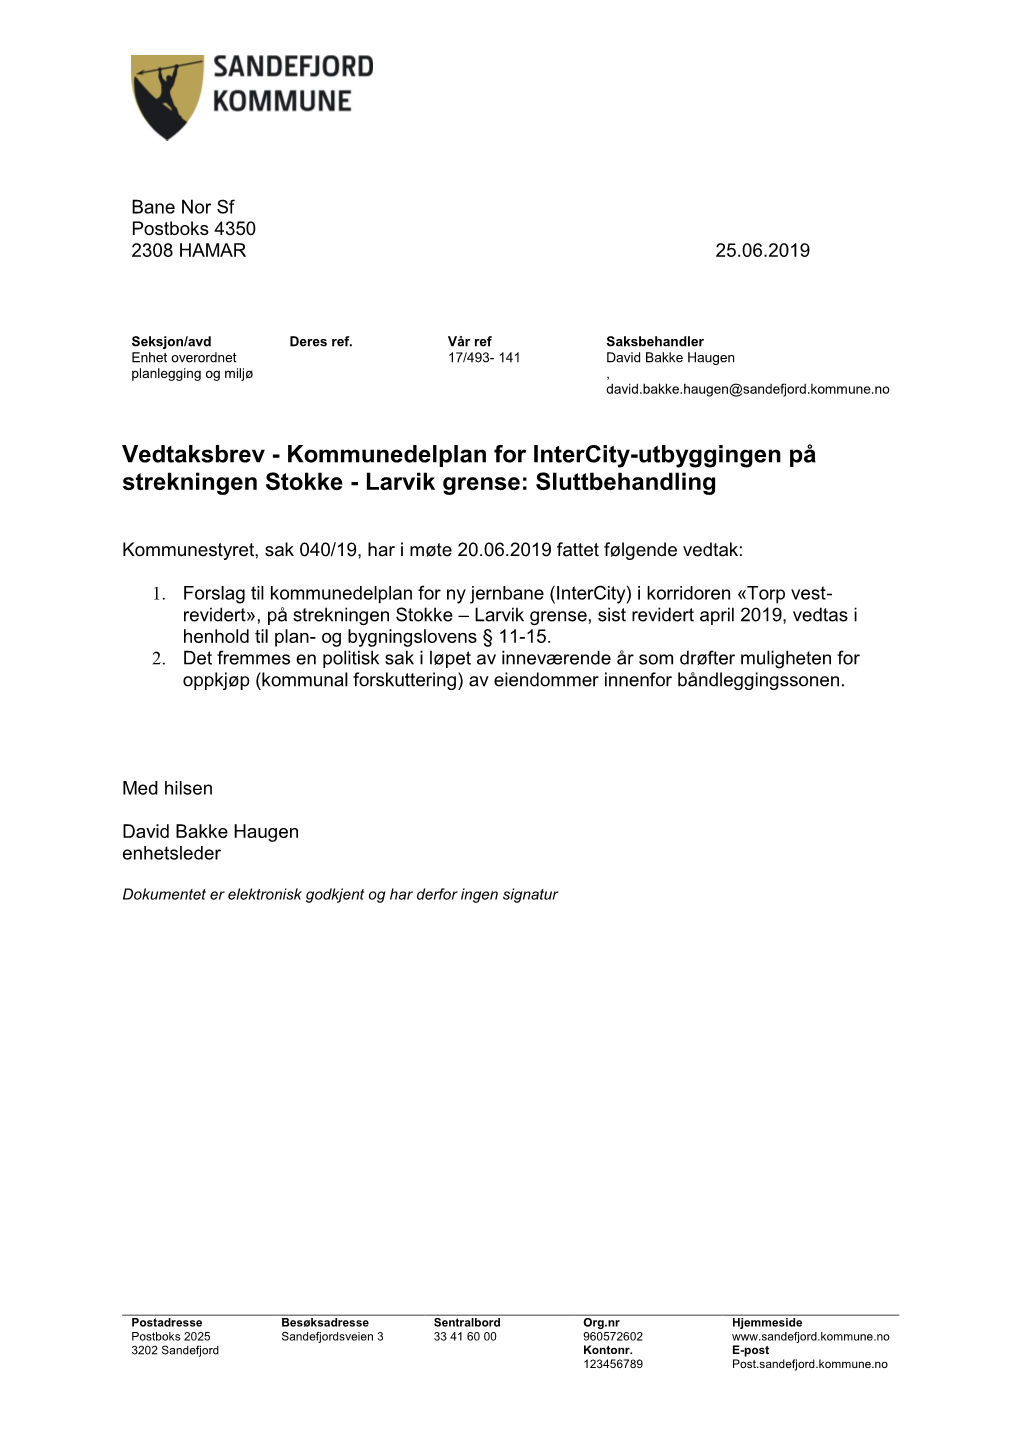 Vedtaksbrev - Kommunedelplan for Intercity-Utbyggingen På Strekningen Stokke - Larvik Grense: Sluttbehandling